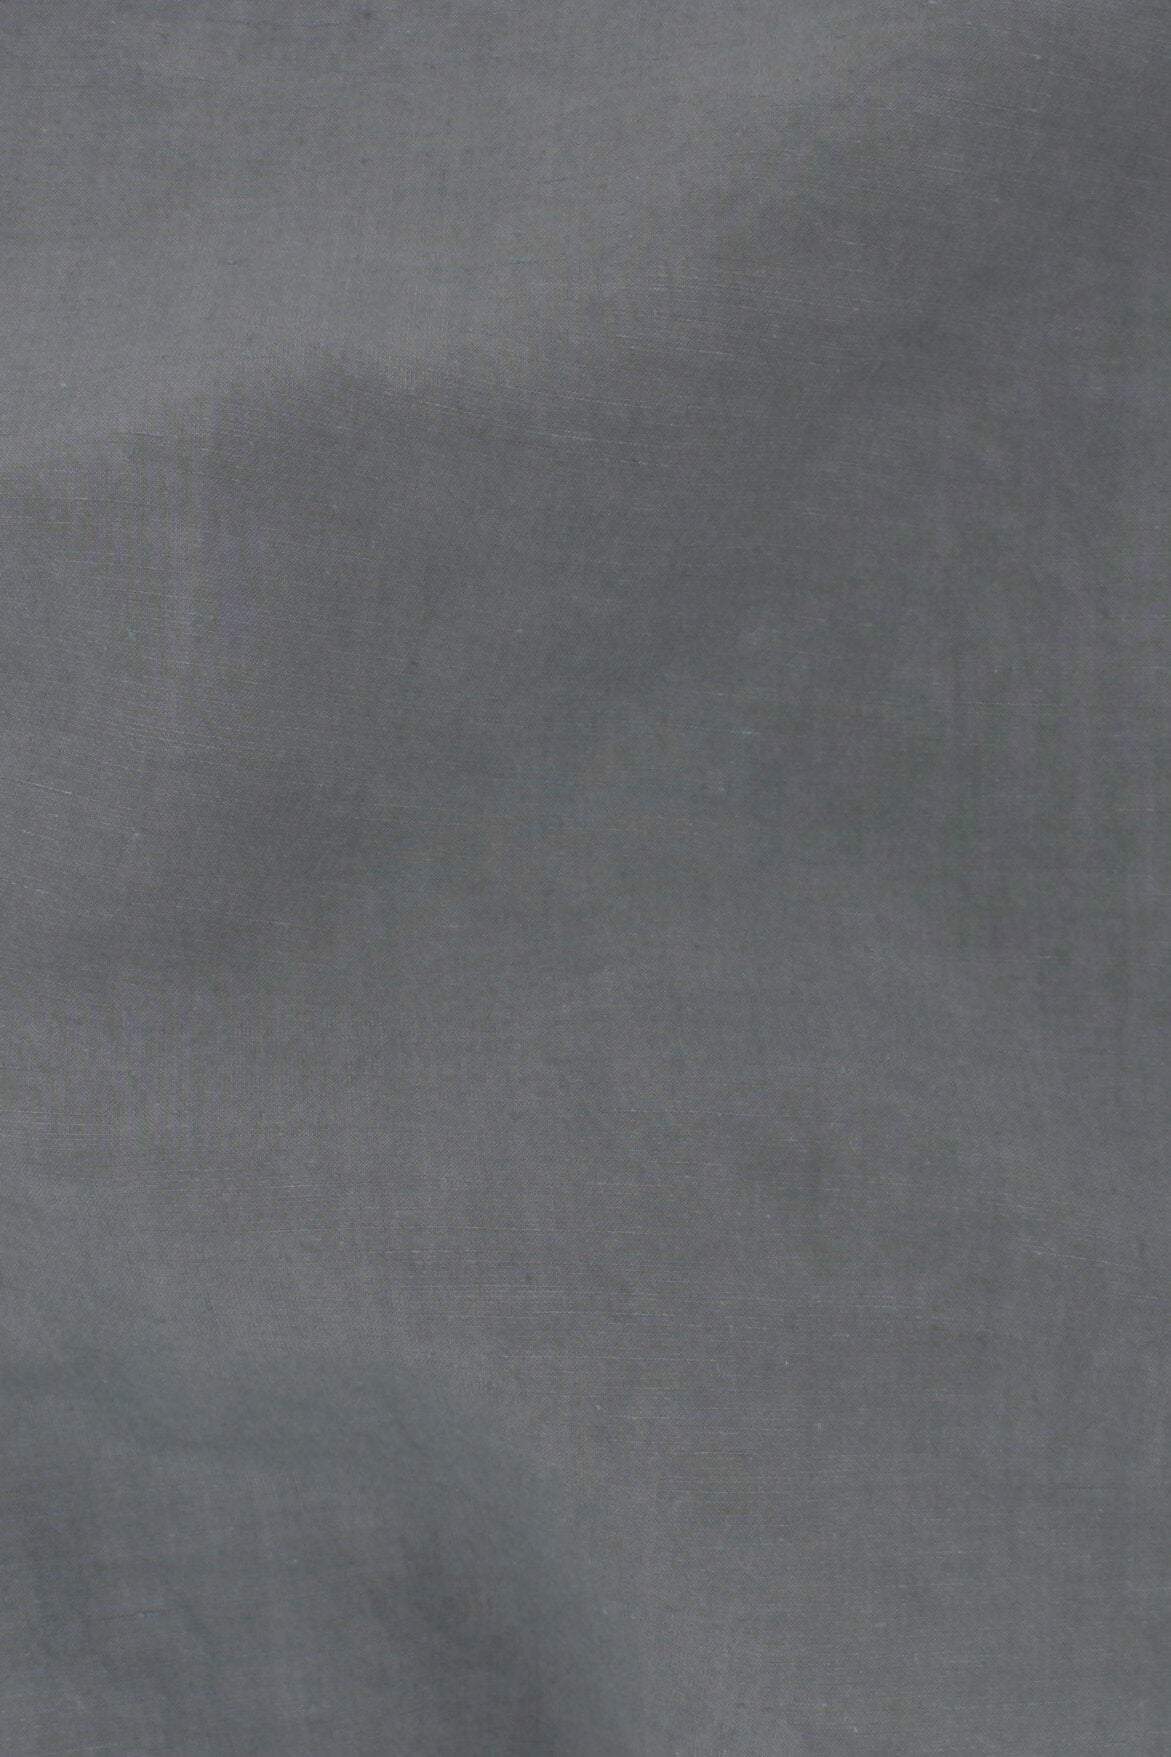 Bizet Linen Grey